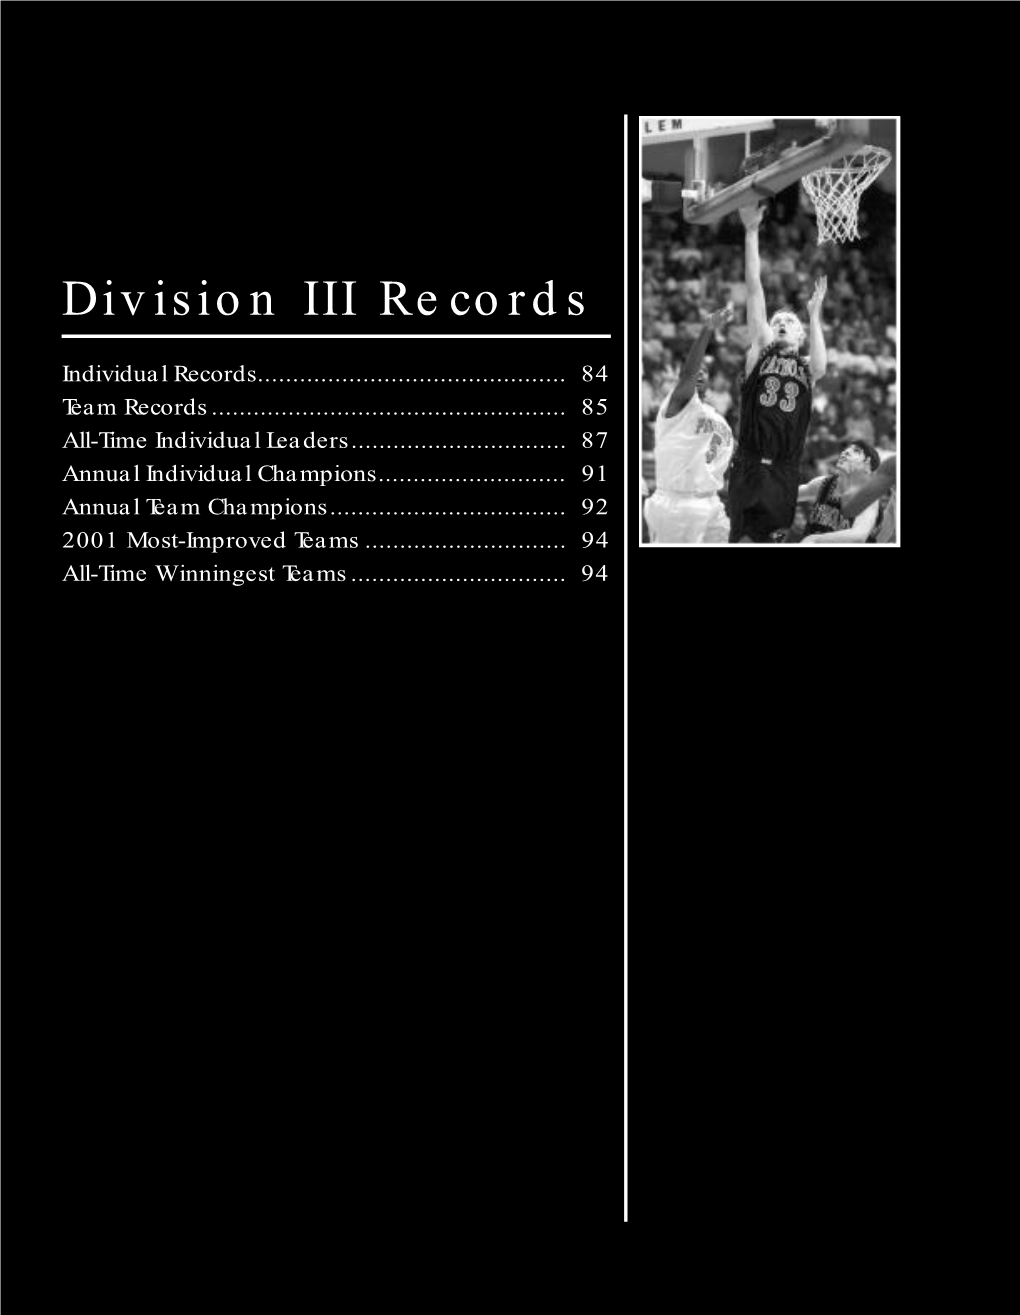 2002 Men's NCAA Basketball Records Book